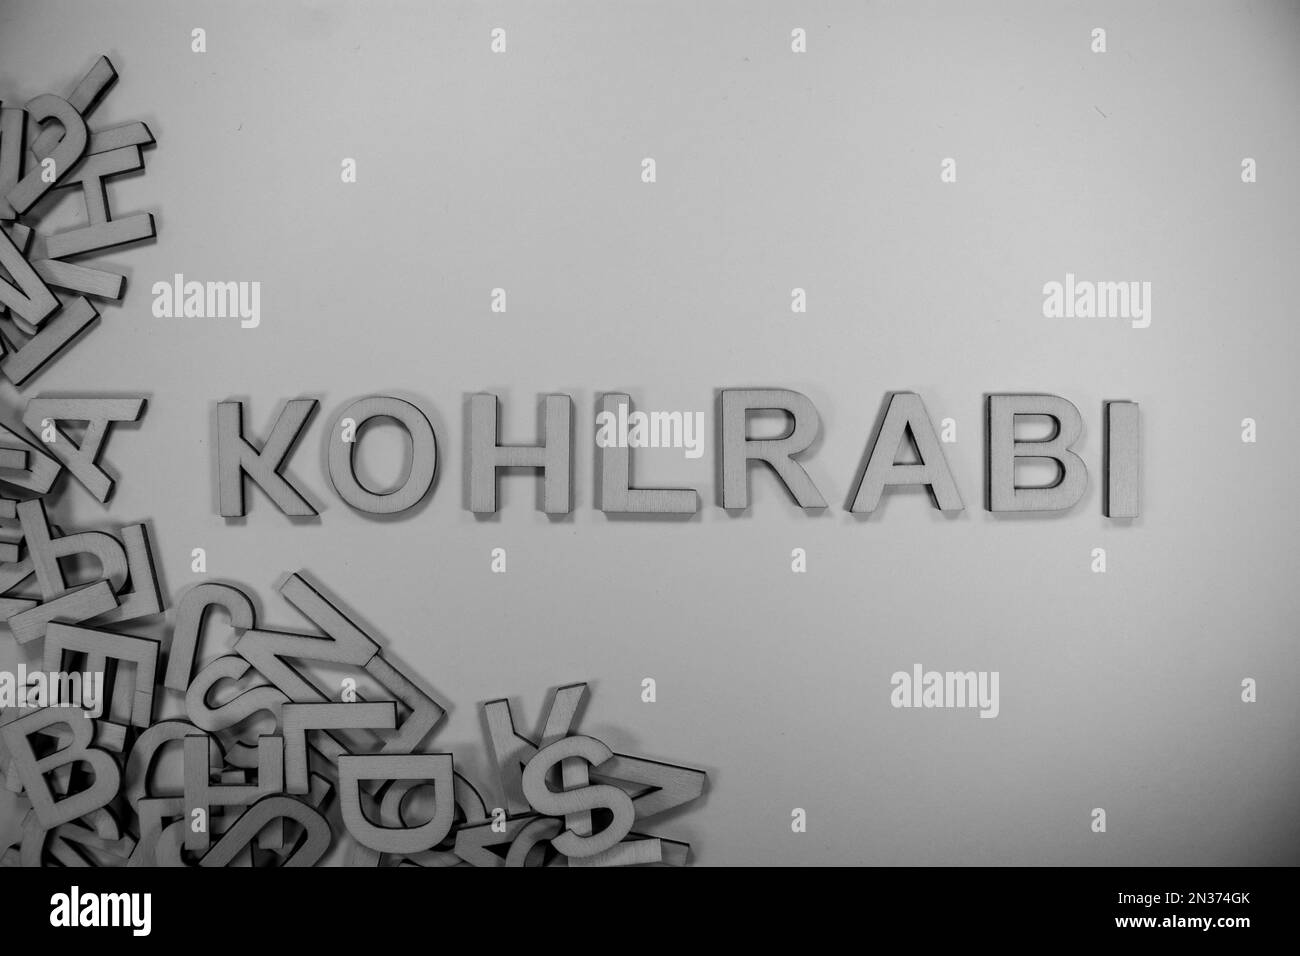 KOHLRABI in hölzernen englischen Wörtern, Großbuchstaben, die aus einem Stapel schwarz-weißer Buchstaben herausfließen Stockfoto